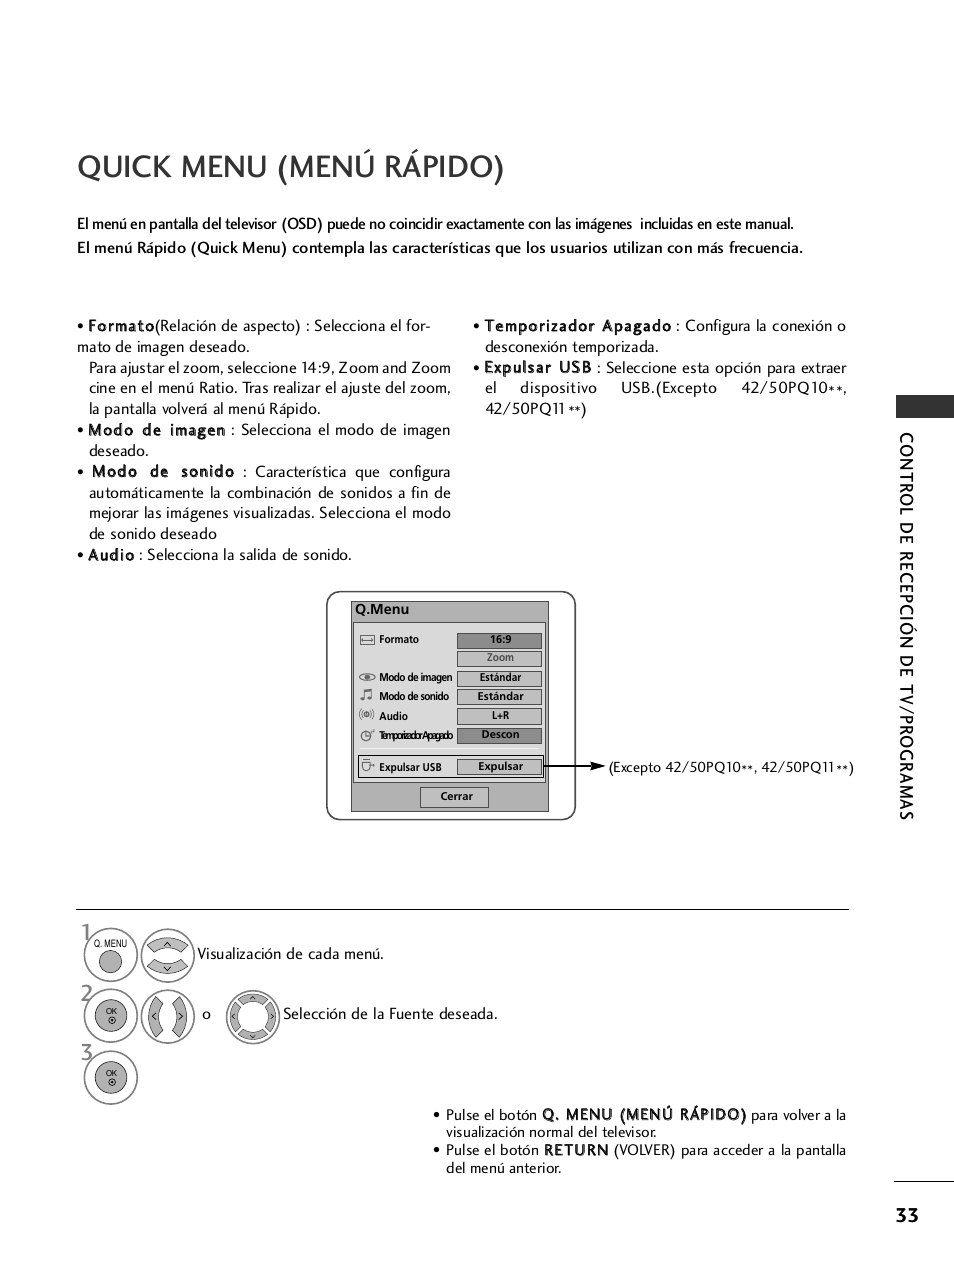 Quick menu (menú rápido) | LG 50PS3000 Manual del usuario | Página 35 / 124